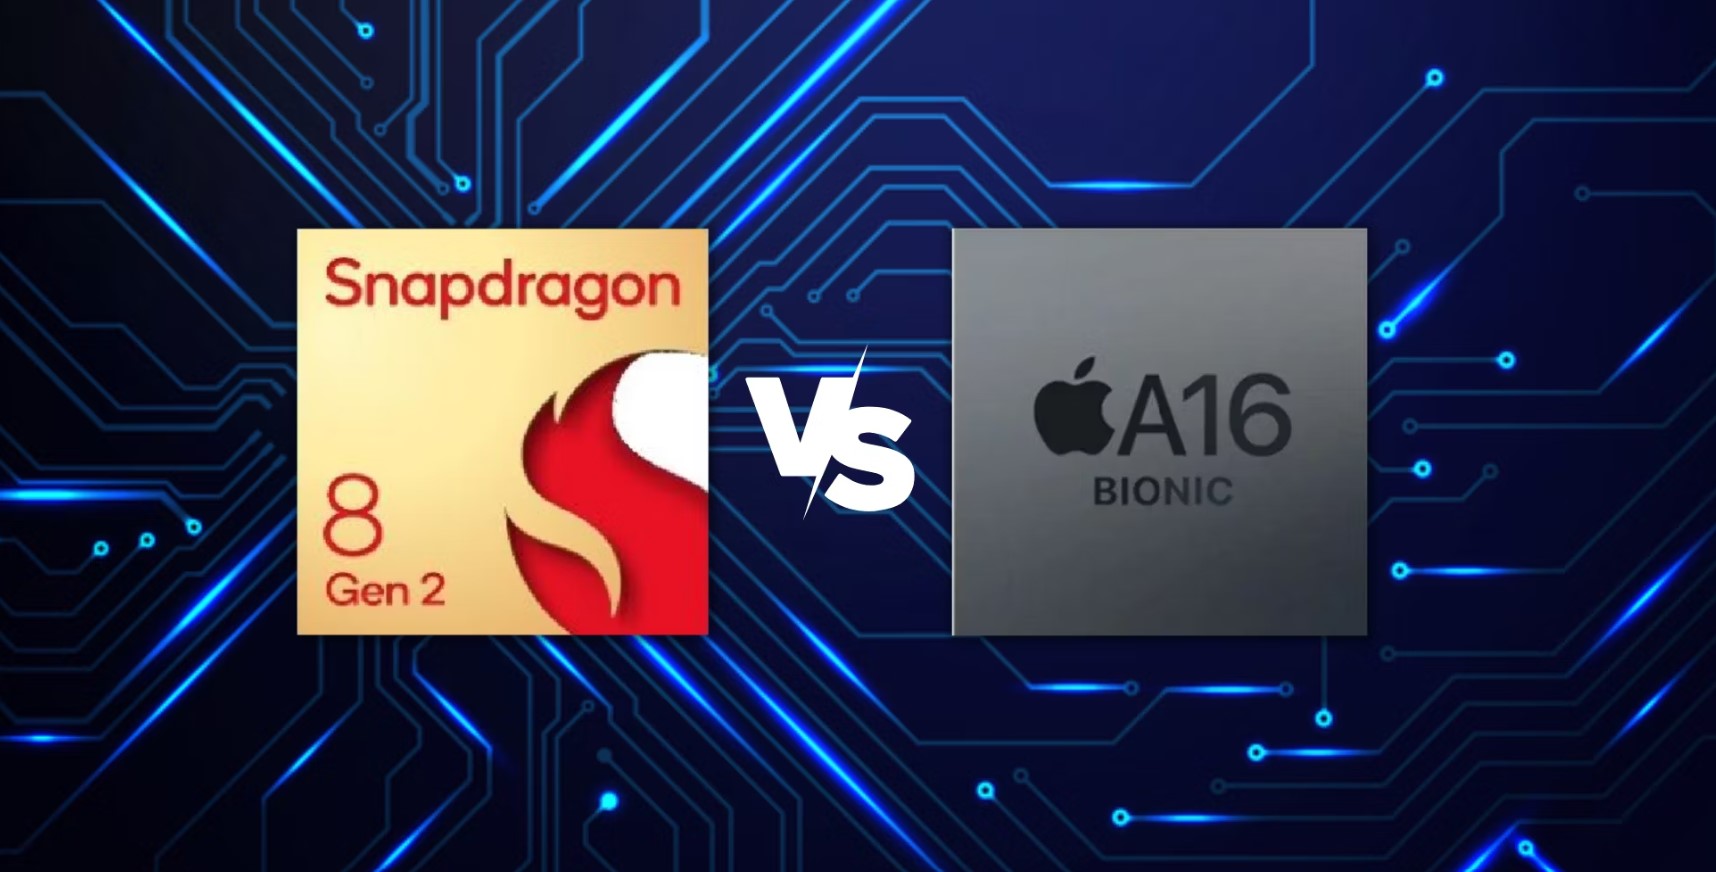 مقارنة بين Apple A16 Bionic و SD 8 Gen 2، أيهما أفضل معالج هاتف رائد لعام 2023؟